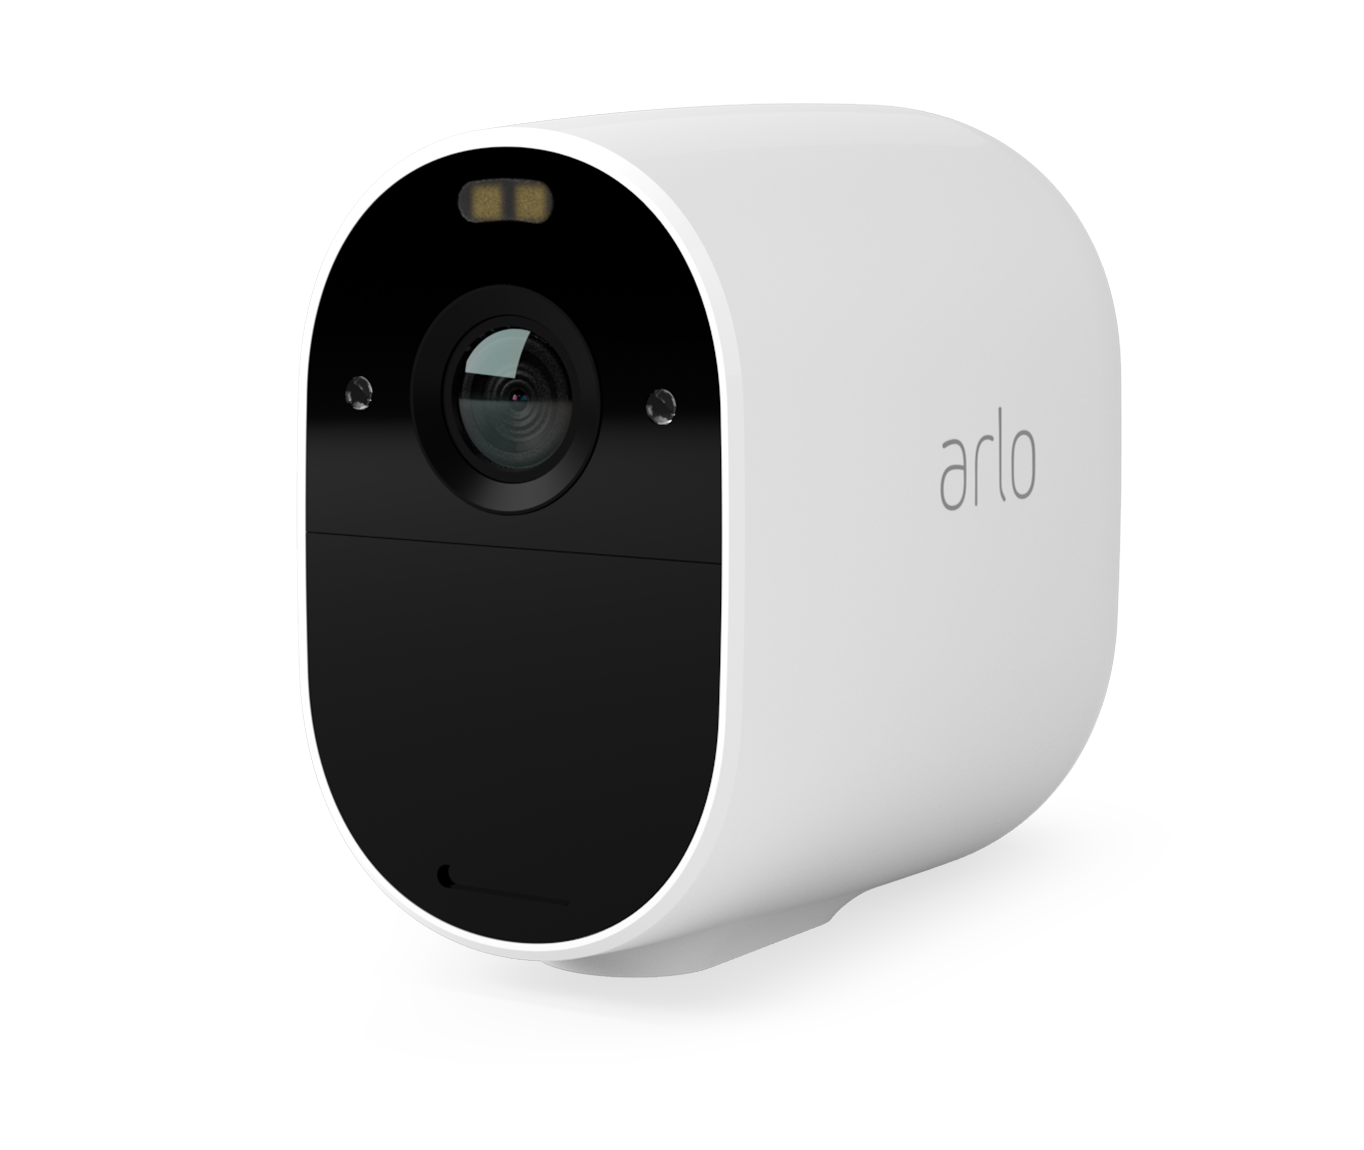 Arlo Essential, notre caméra de surveillance sans fil